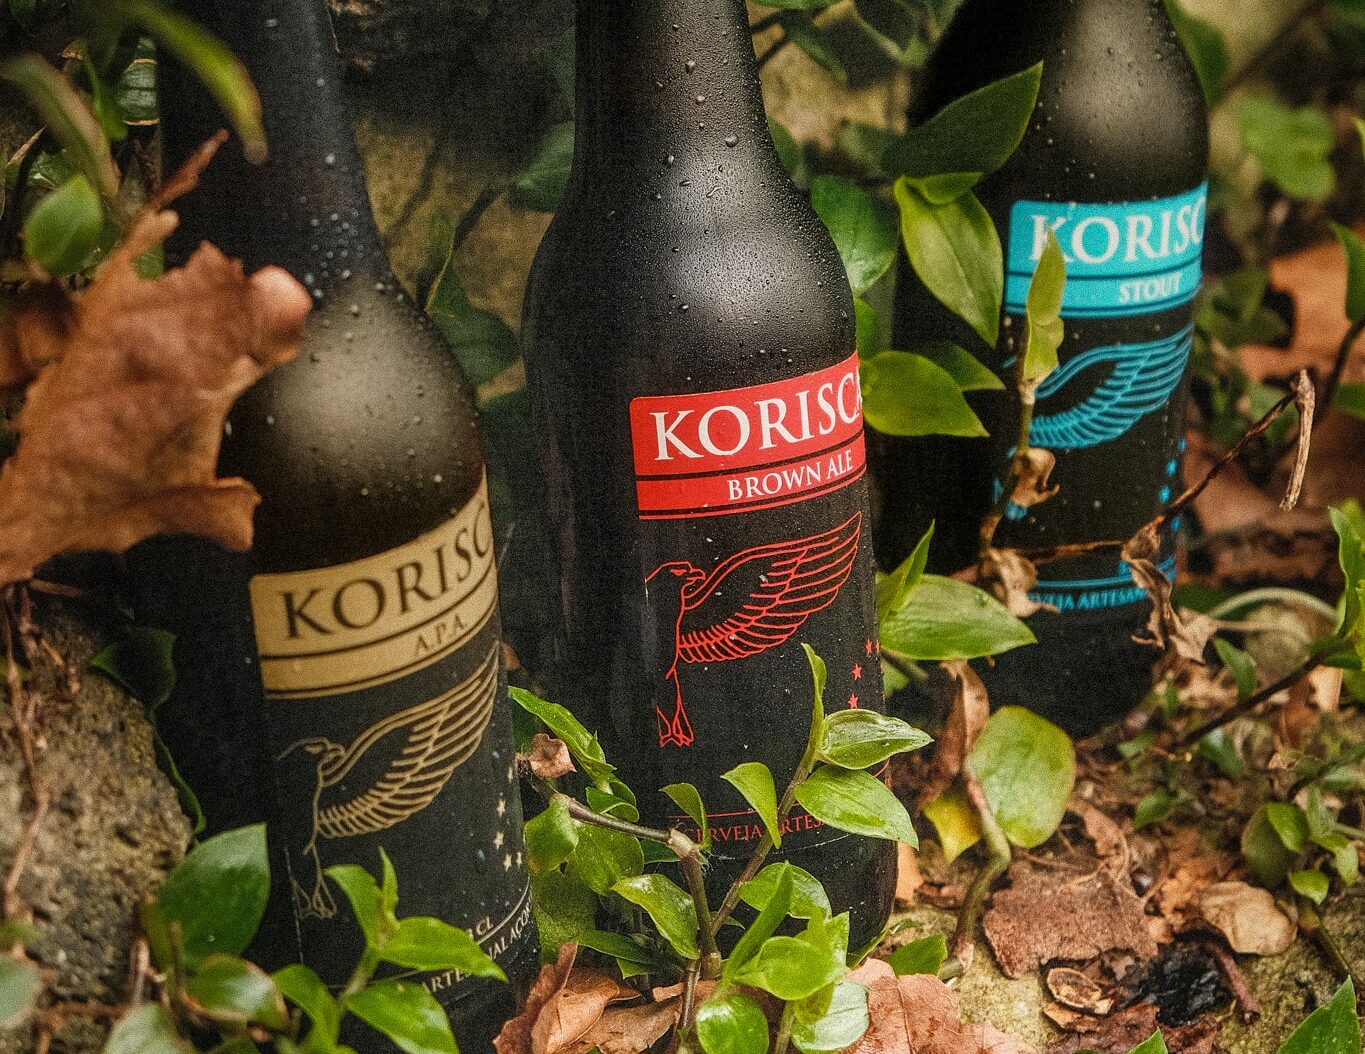 Cerveja artesanal açoriana Korisca Clássica II (APA), Korisca Clássica I (Brown Ale) e Korisca Clássica III (Stout), em vegetação verde e folhas castanhas, ilha de São Miguel, Açores.